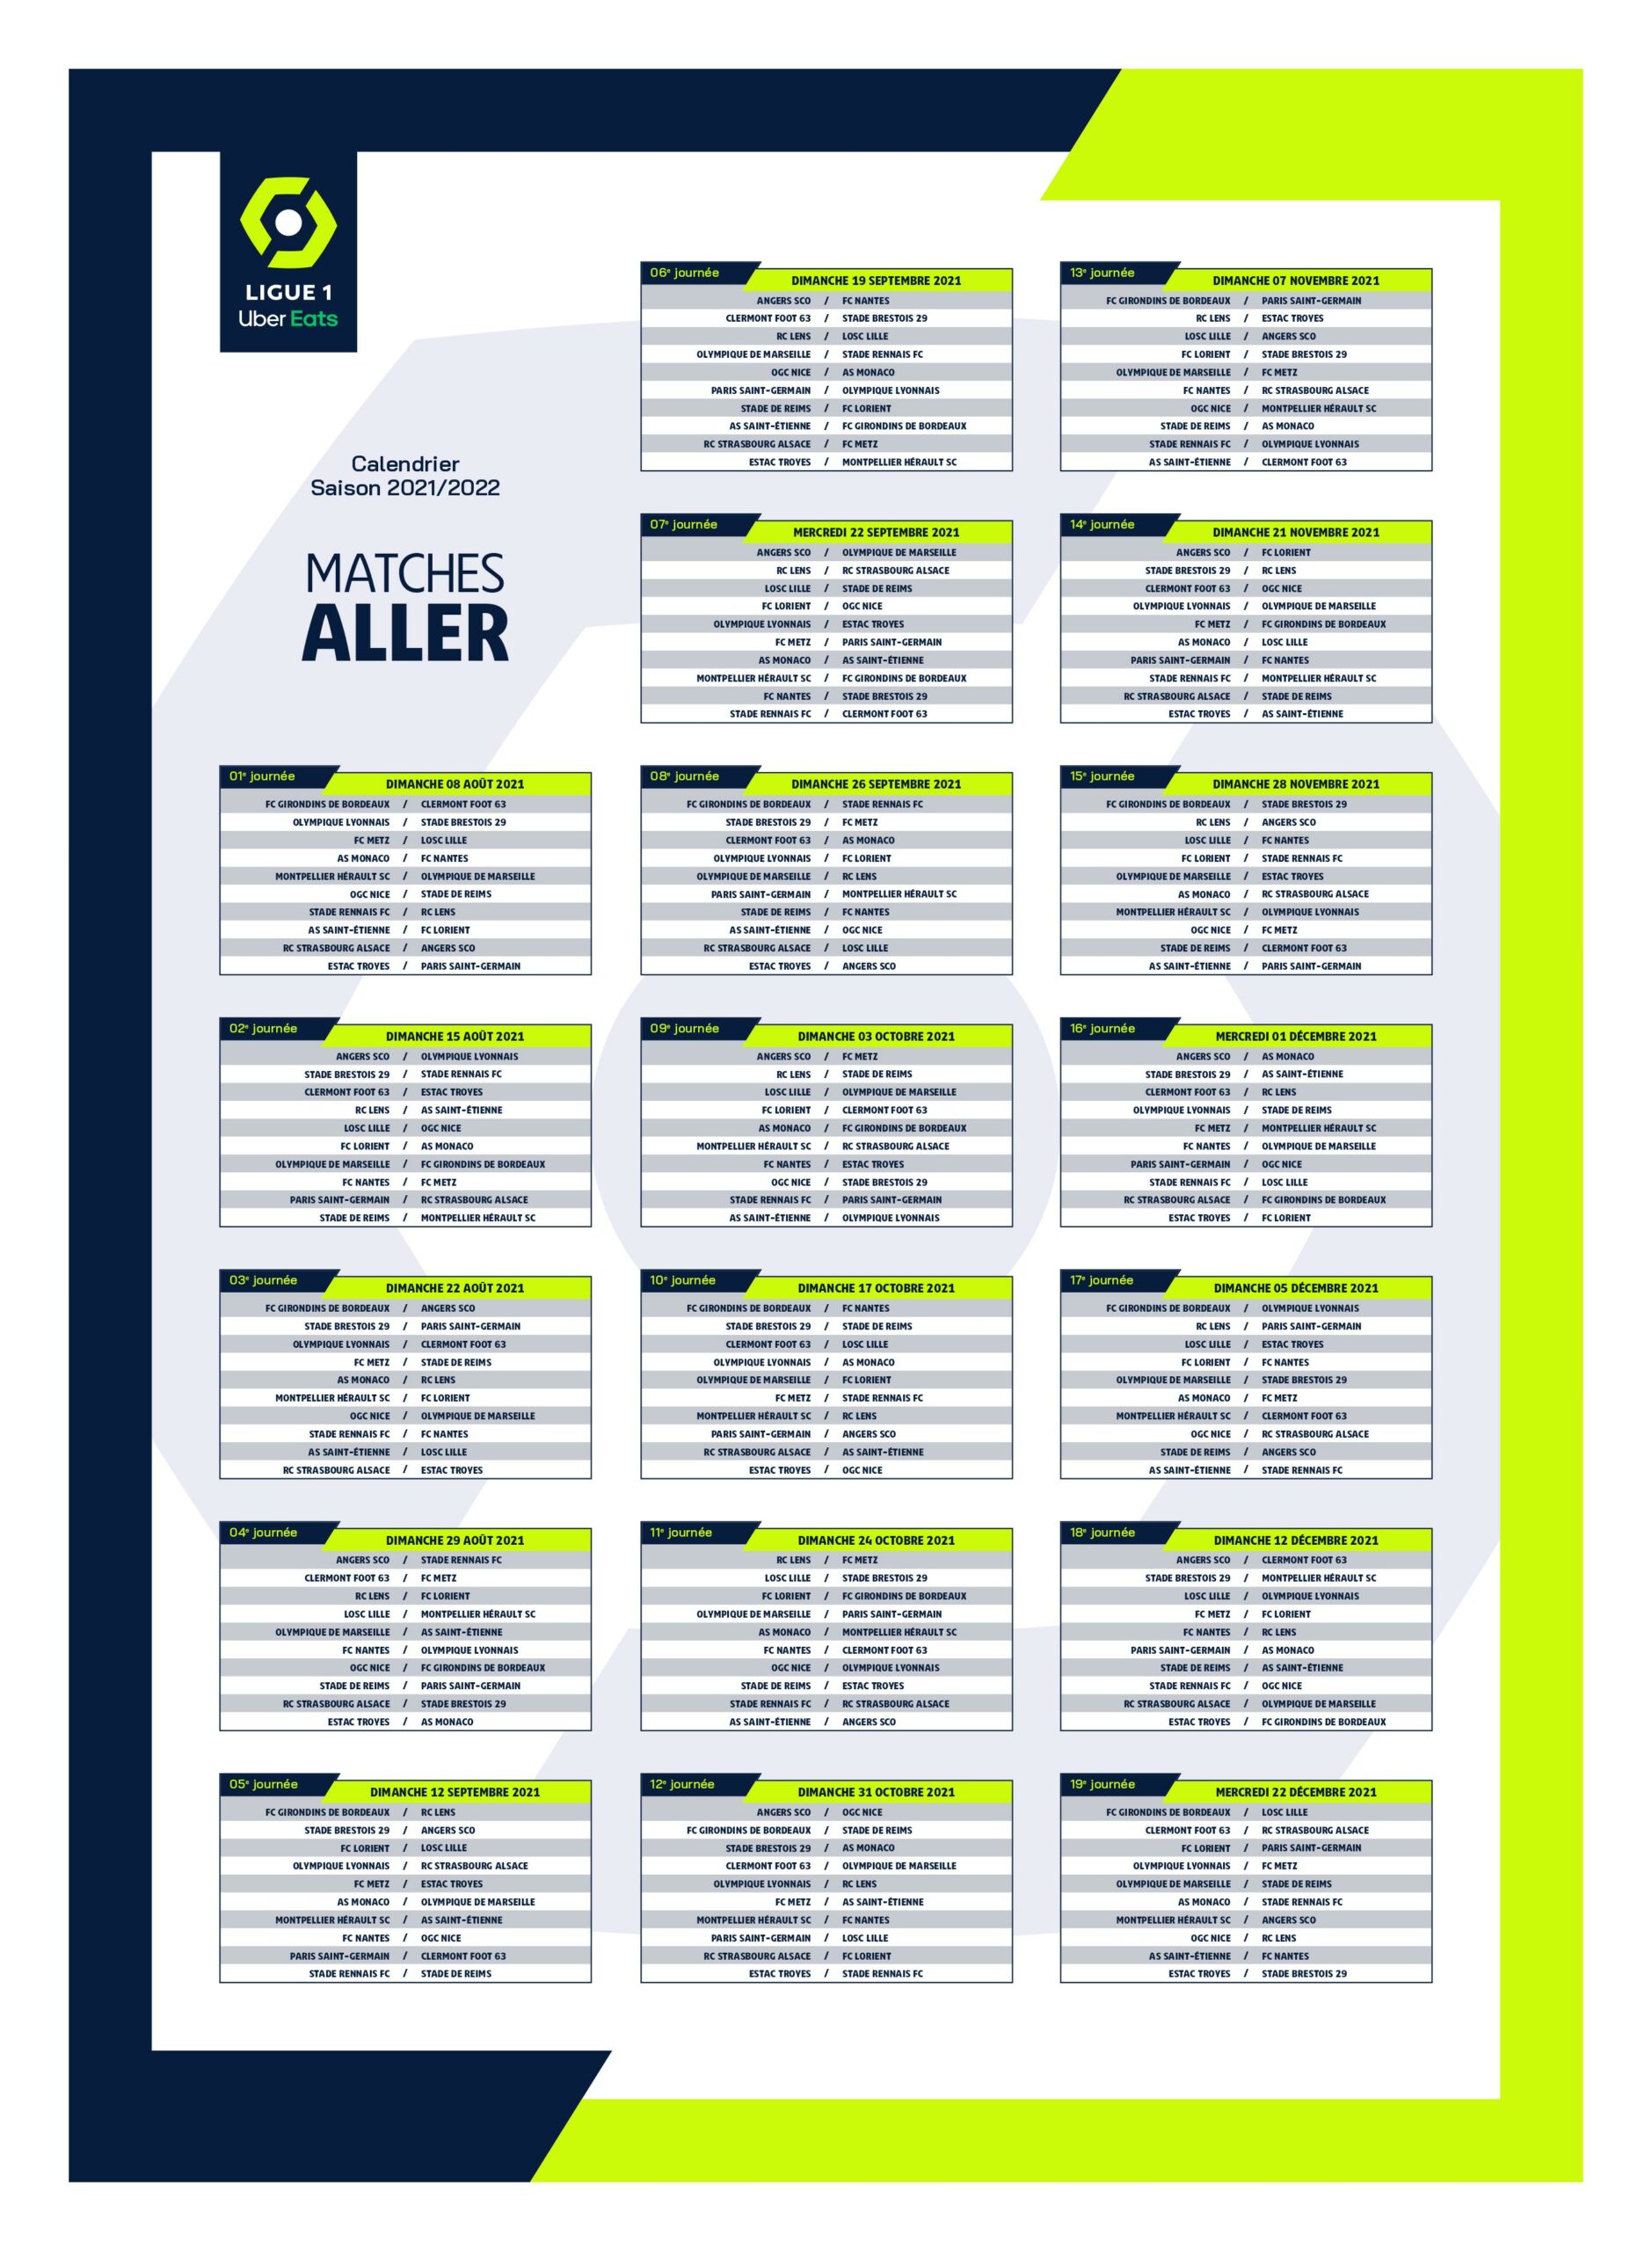 La calendrier complet de la Ligue 1 dévoilé ! — Alsa'Sports